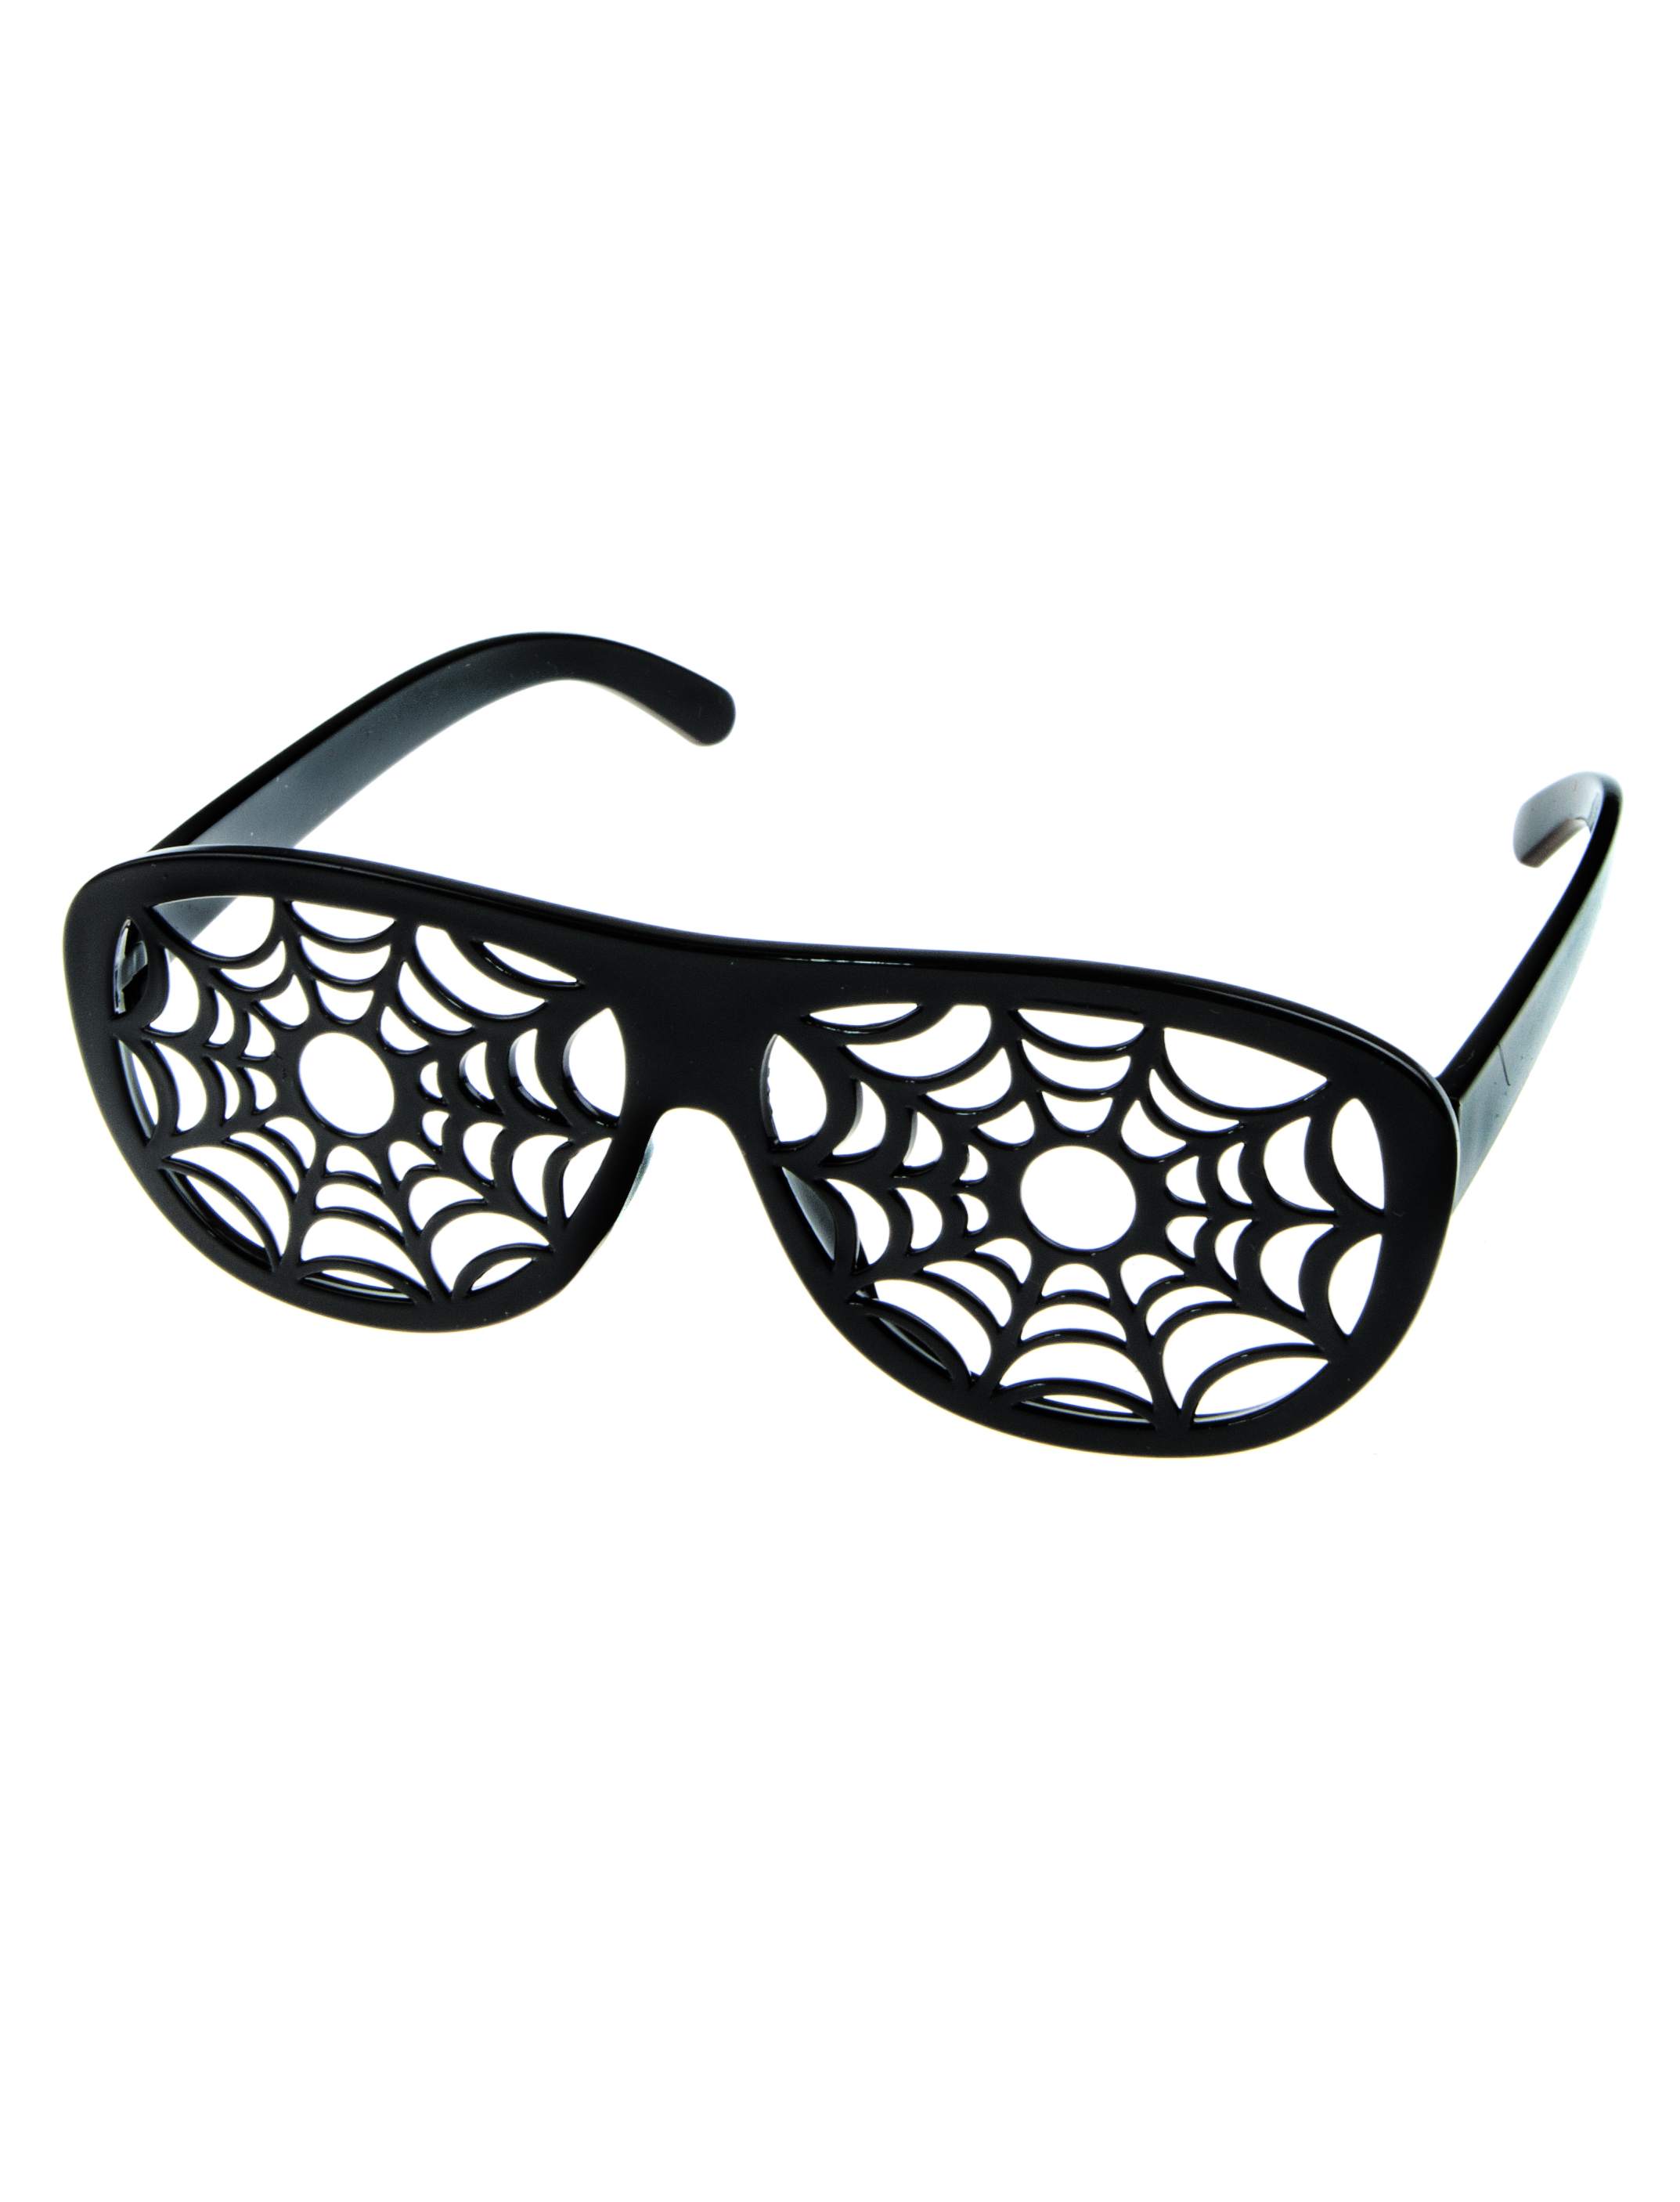 Brille Spinnennetz schwarz